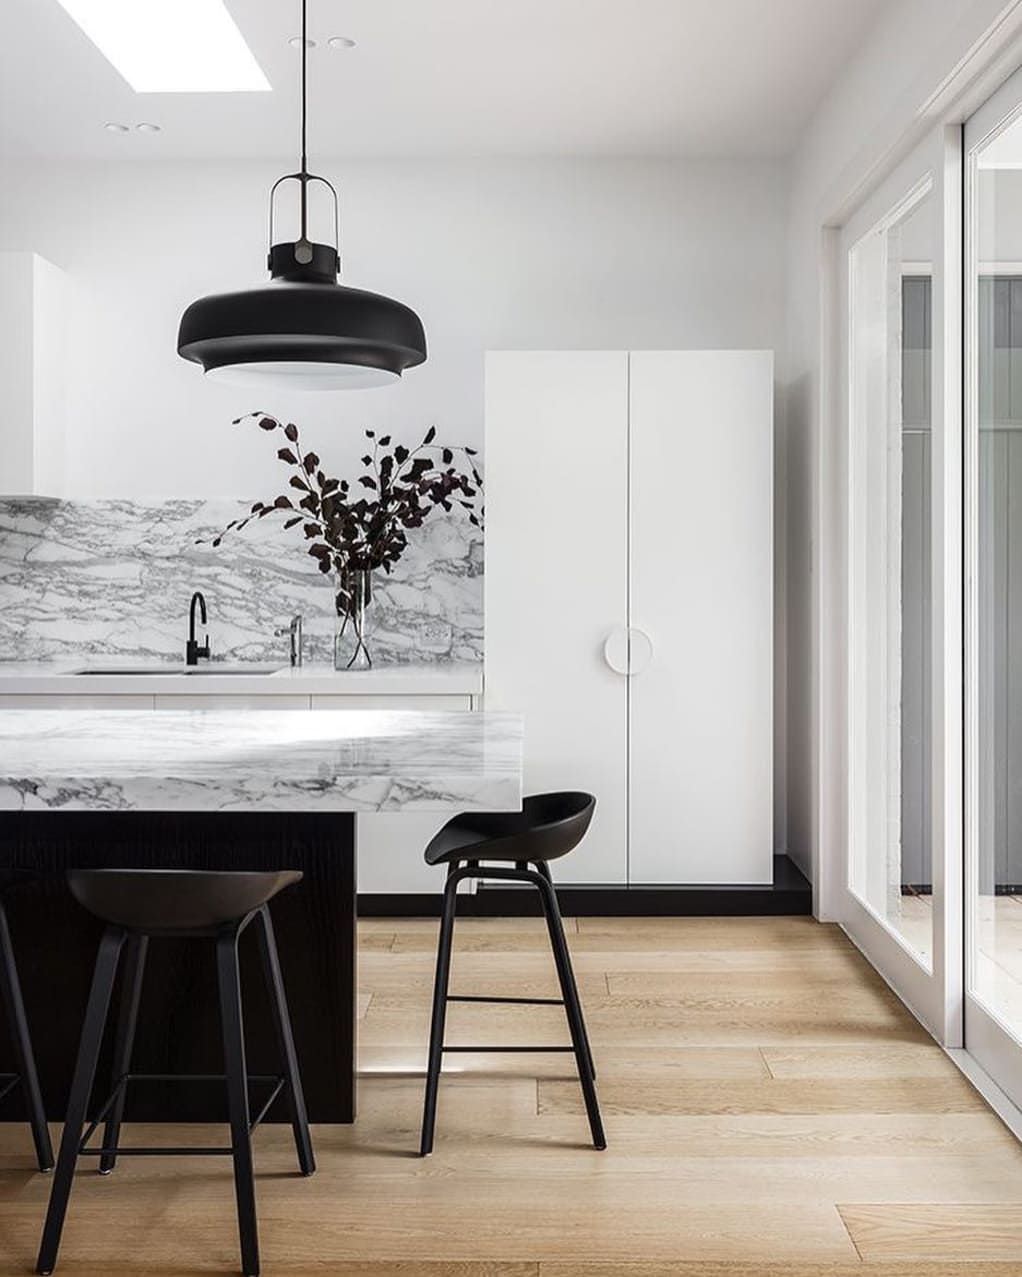 دکوراسیون سفید مشکی آشپزخانه مدرن با بین کابینتی و روکابینتی طرح سنگ مرمر سفید با رگه های مشکی